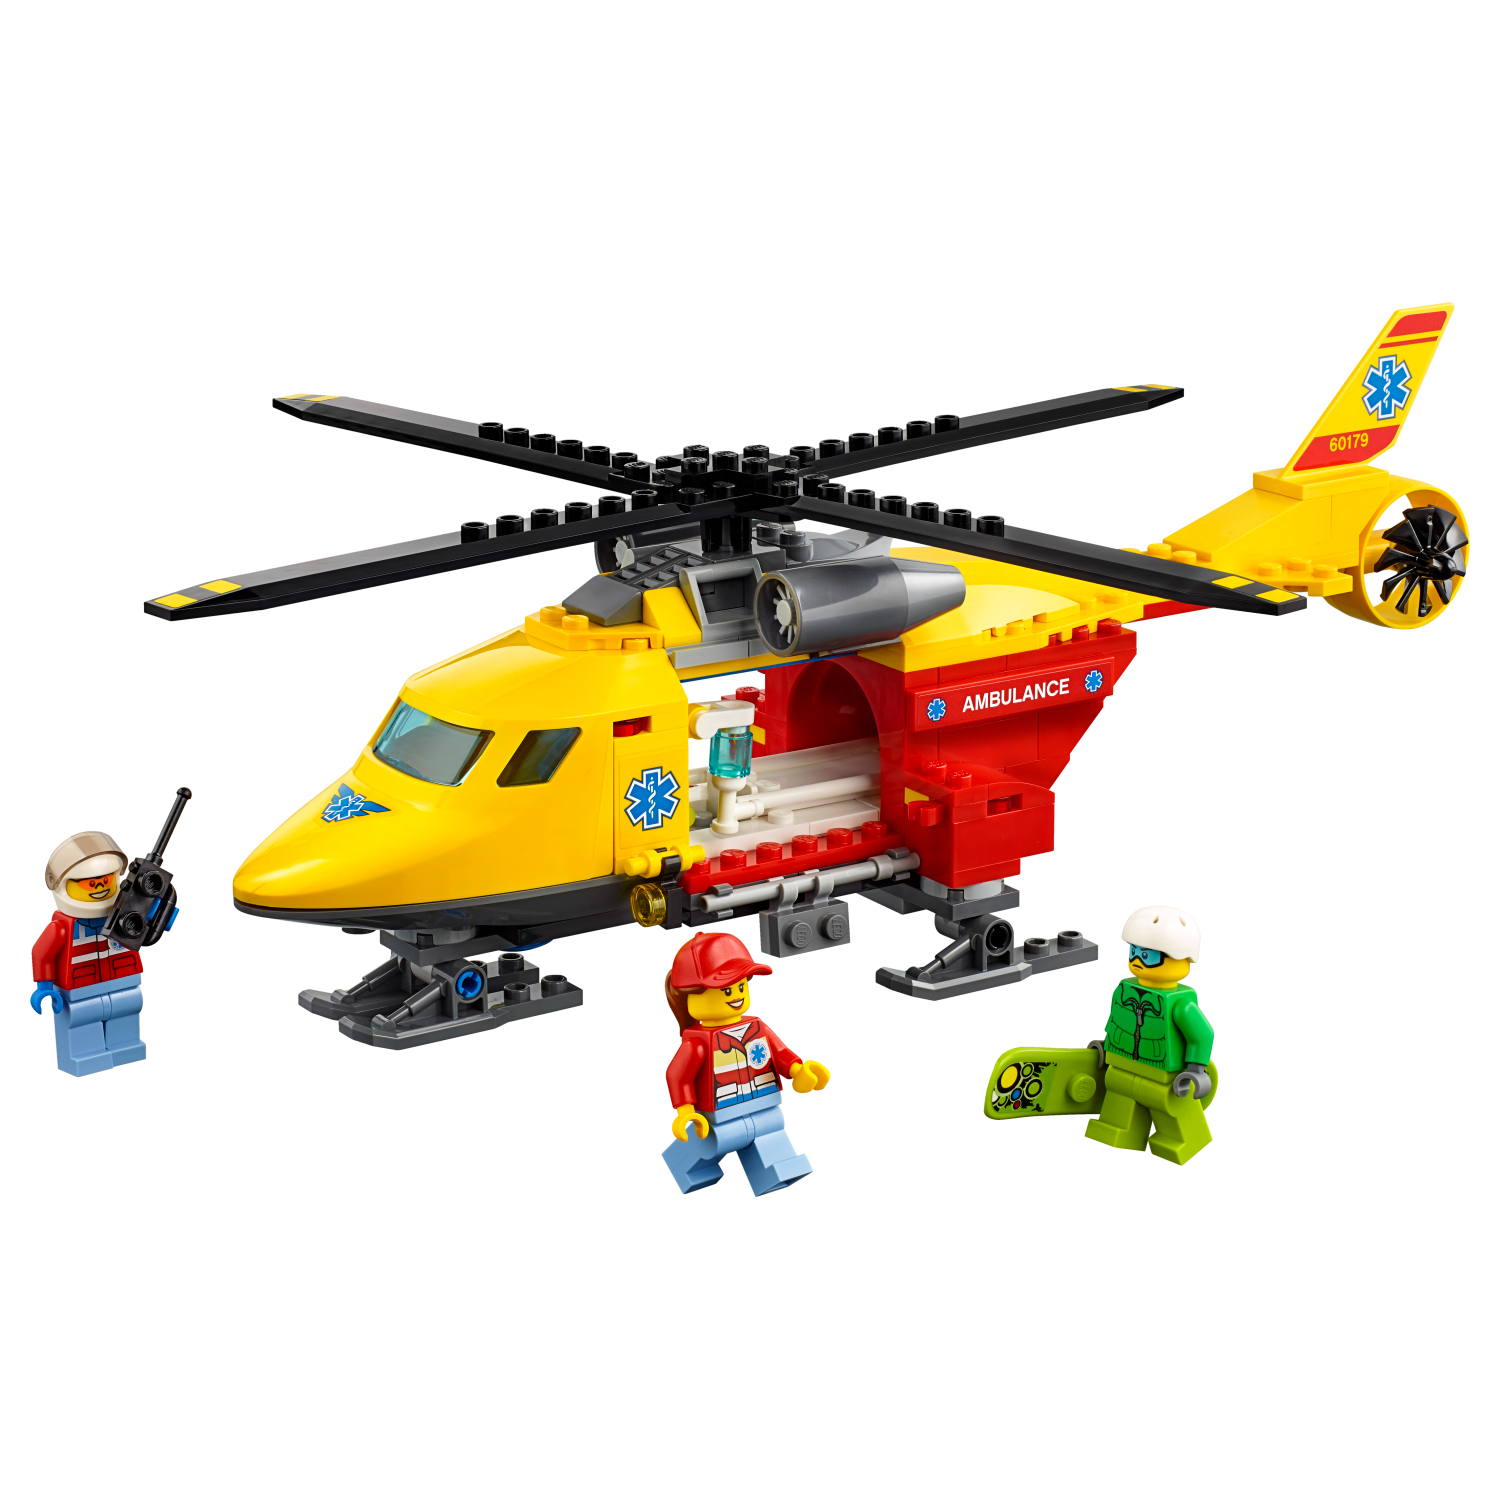 60179 Helikopter hitne pomoći